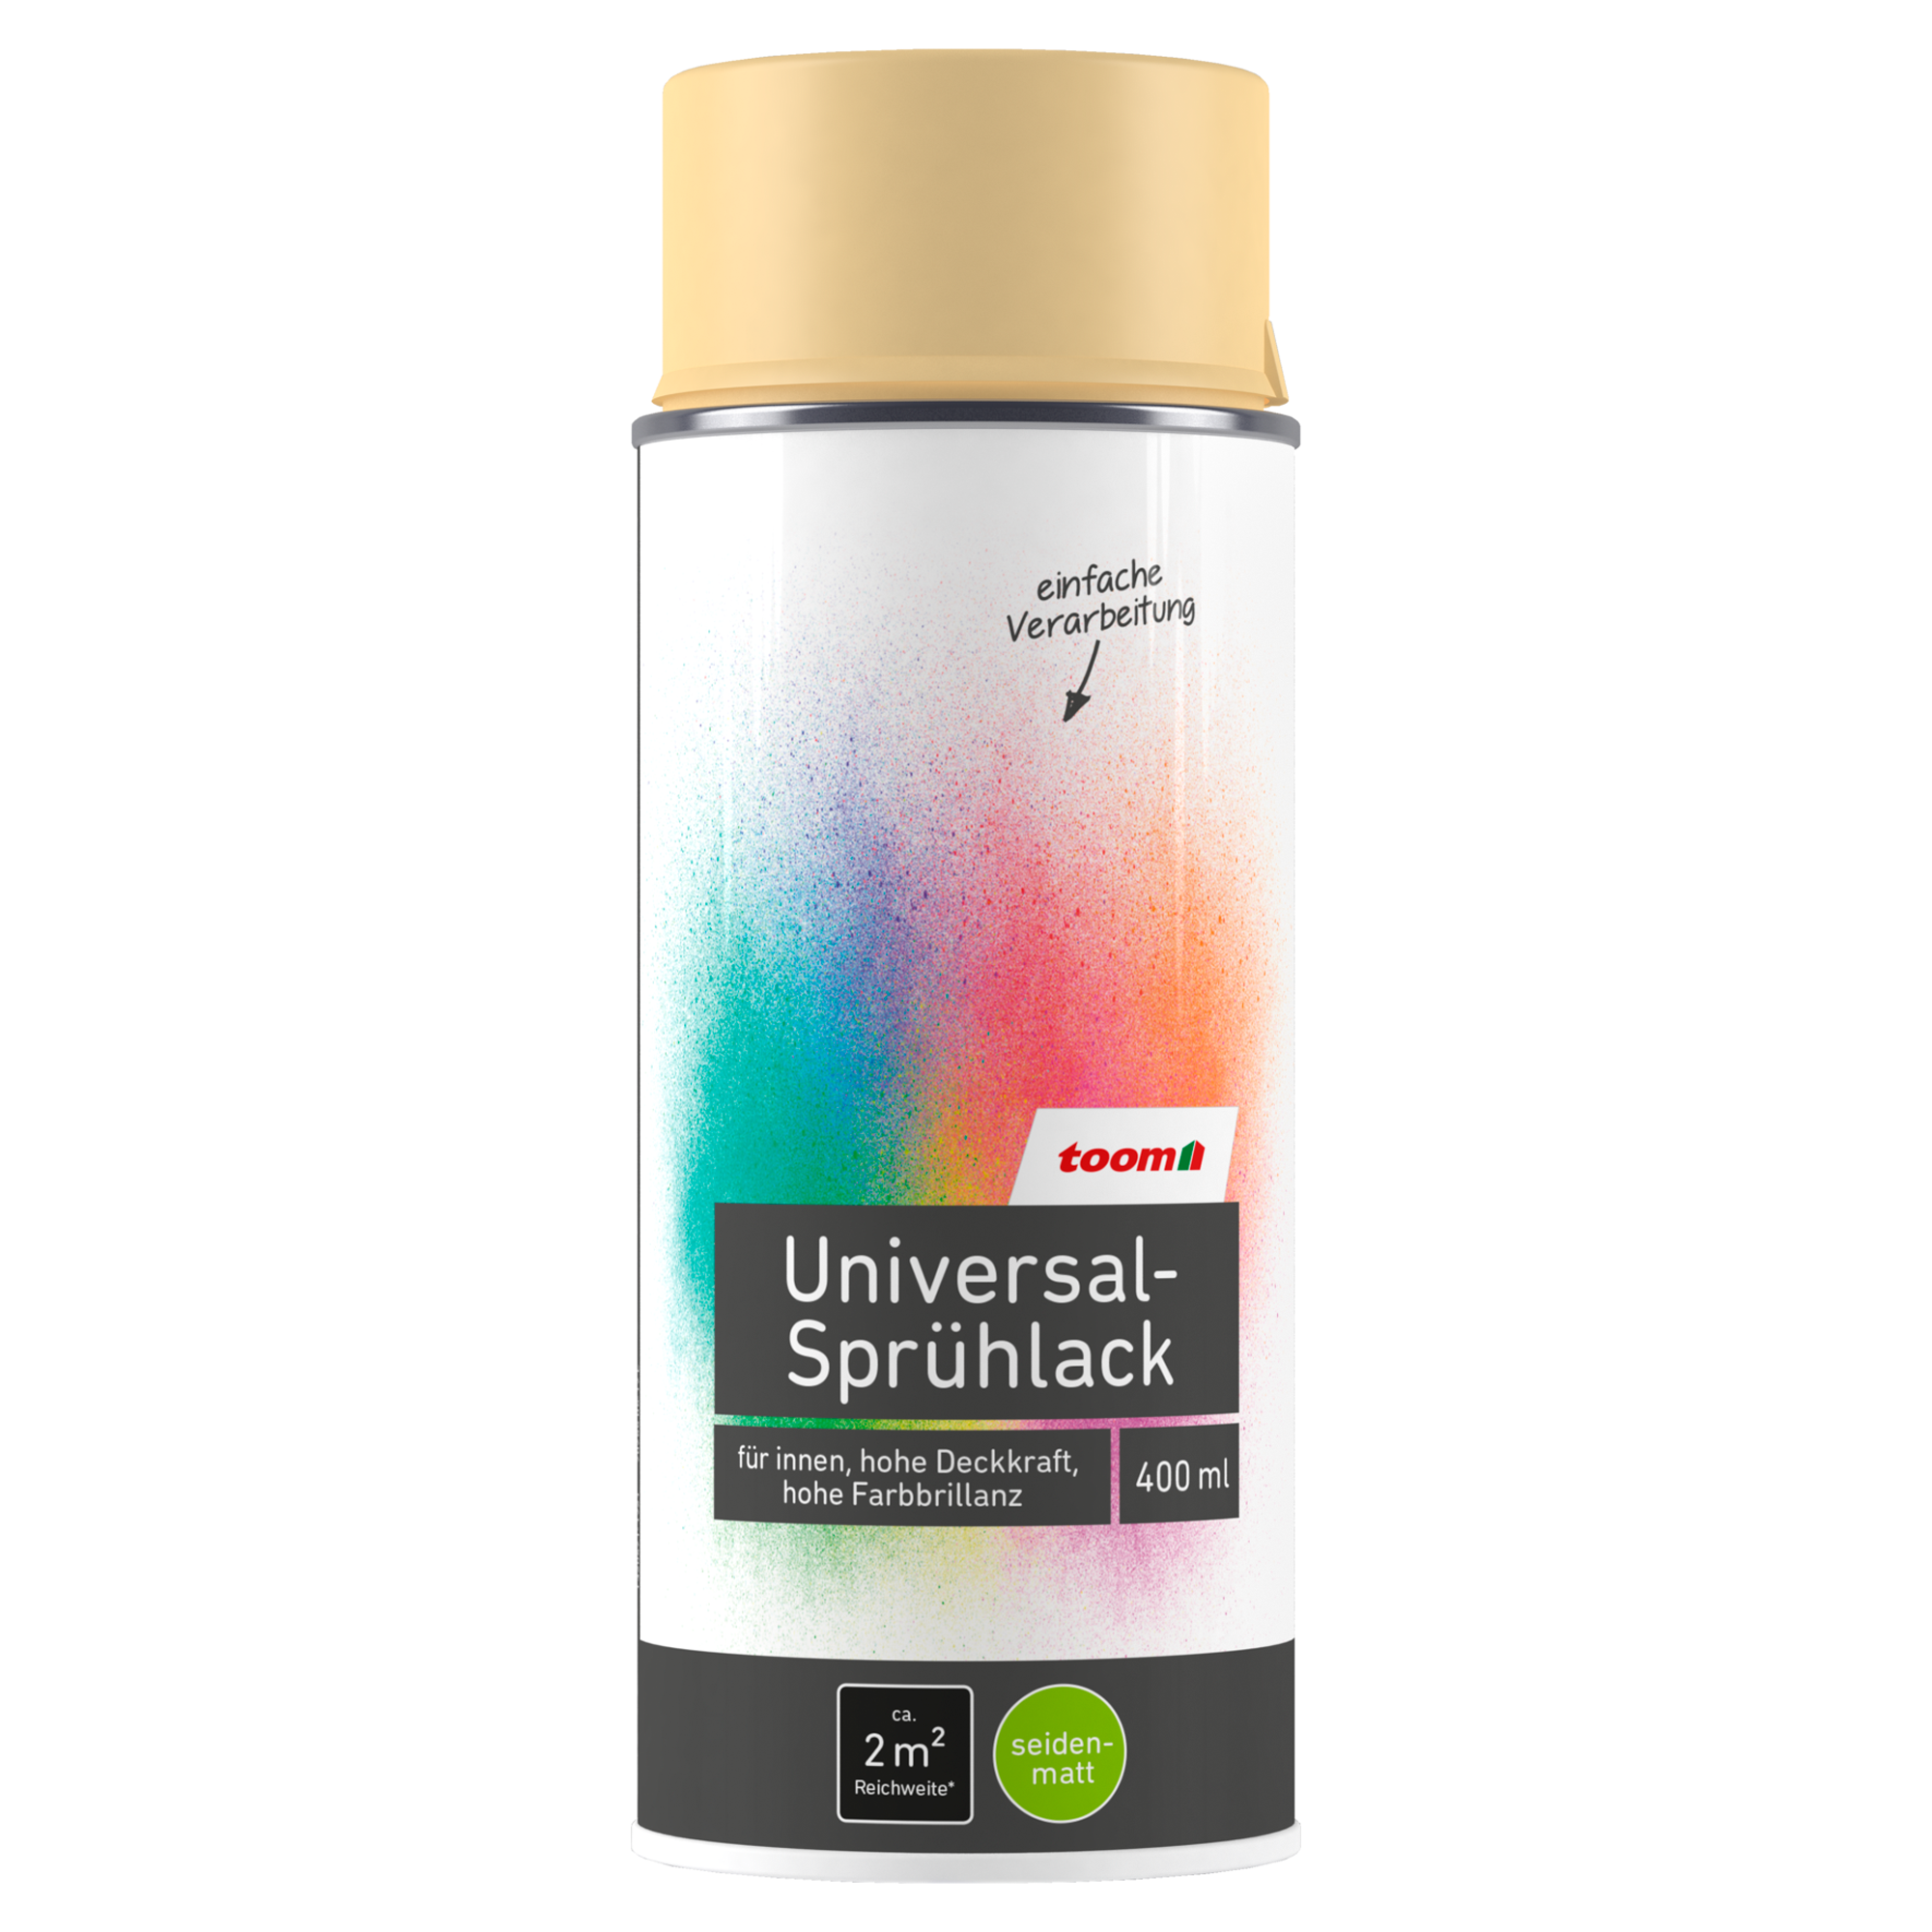 Universal-Sprühlack 'Champagner' elfenbeinfarben seidenmatt 400 ml + product picture